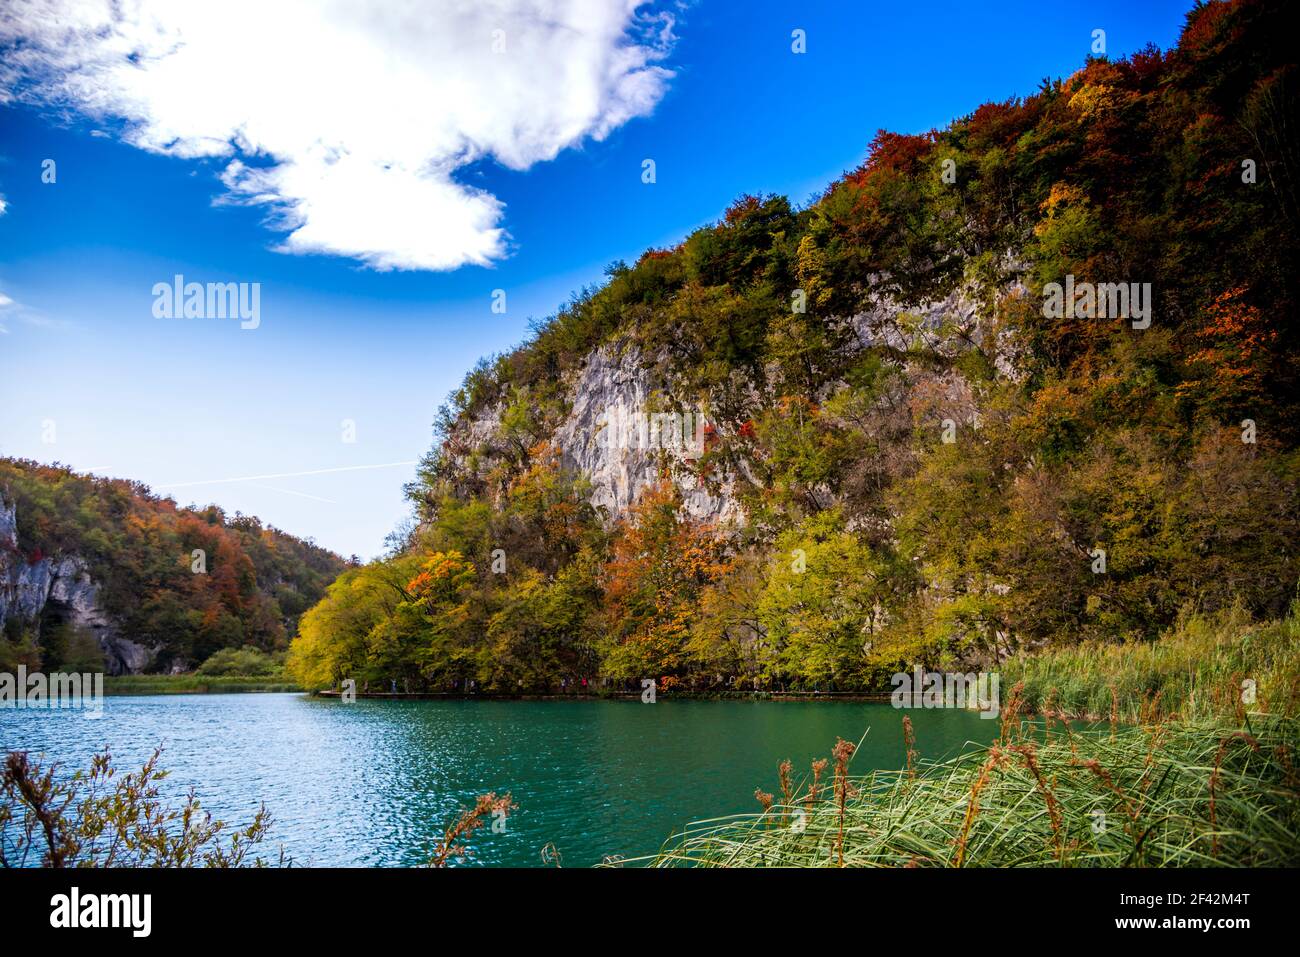 Paysage d'automne étonnant dans le parc naturel de Plitvice Jezera, Croatie Banque D'Images